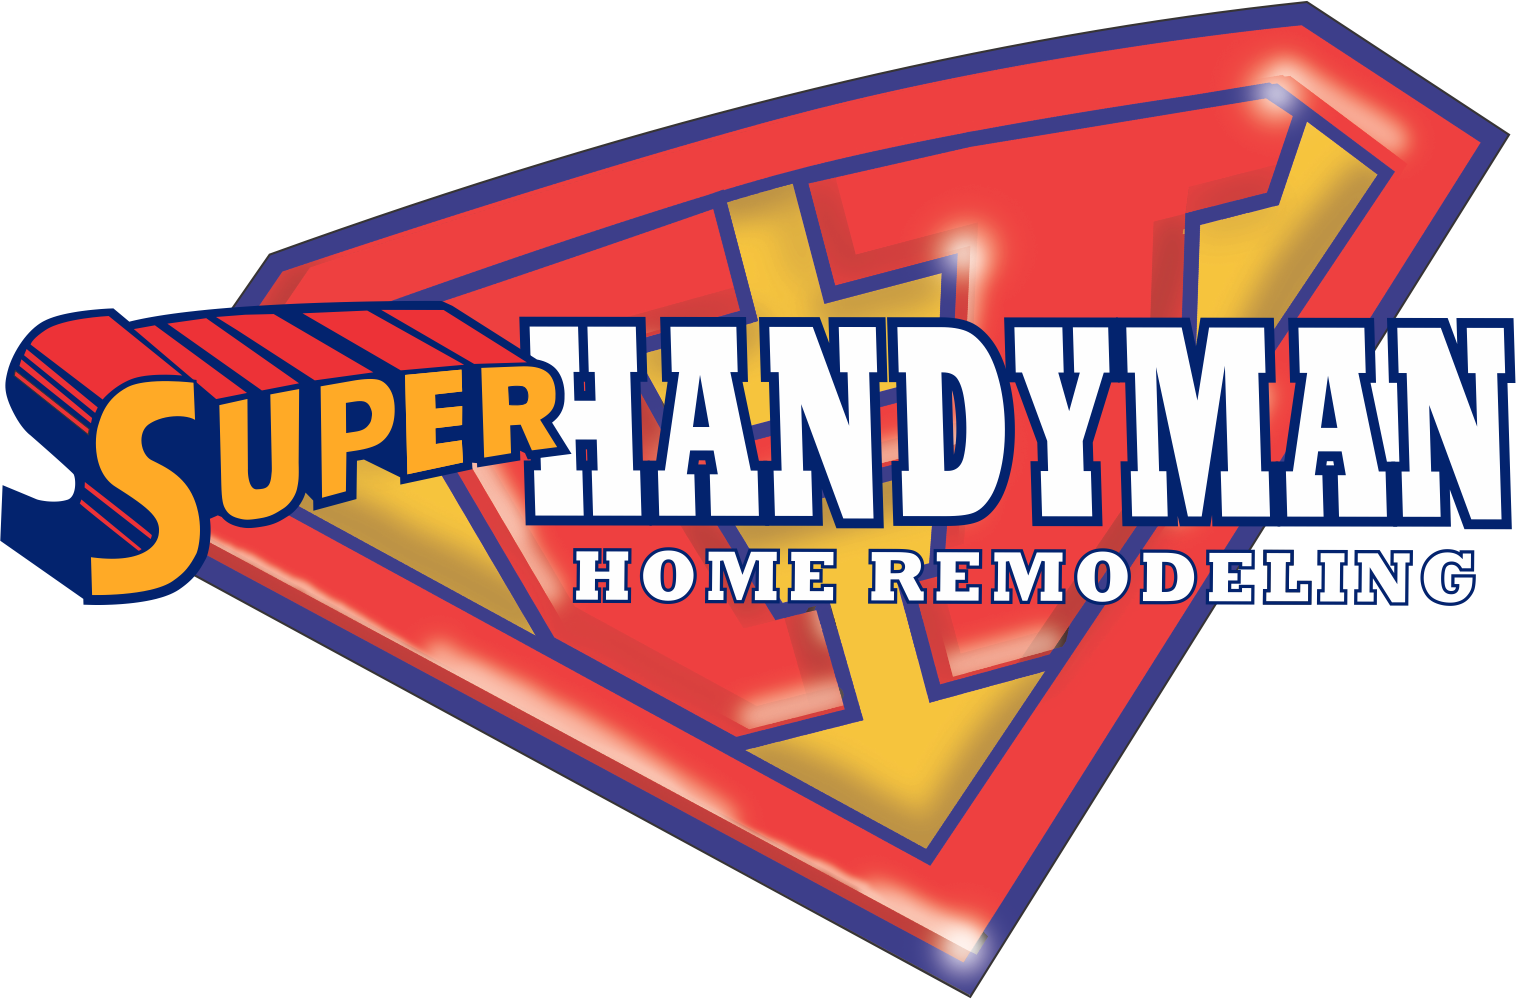 Super Handyman Home Remodeling Logo PNG